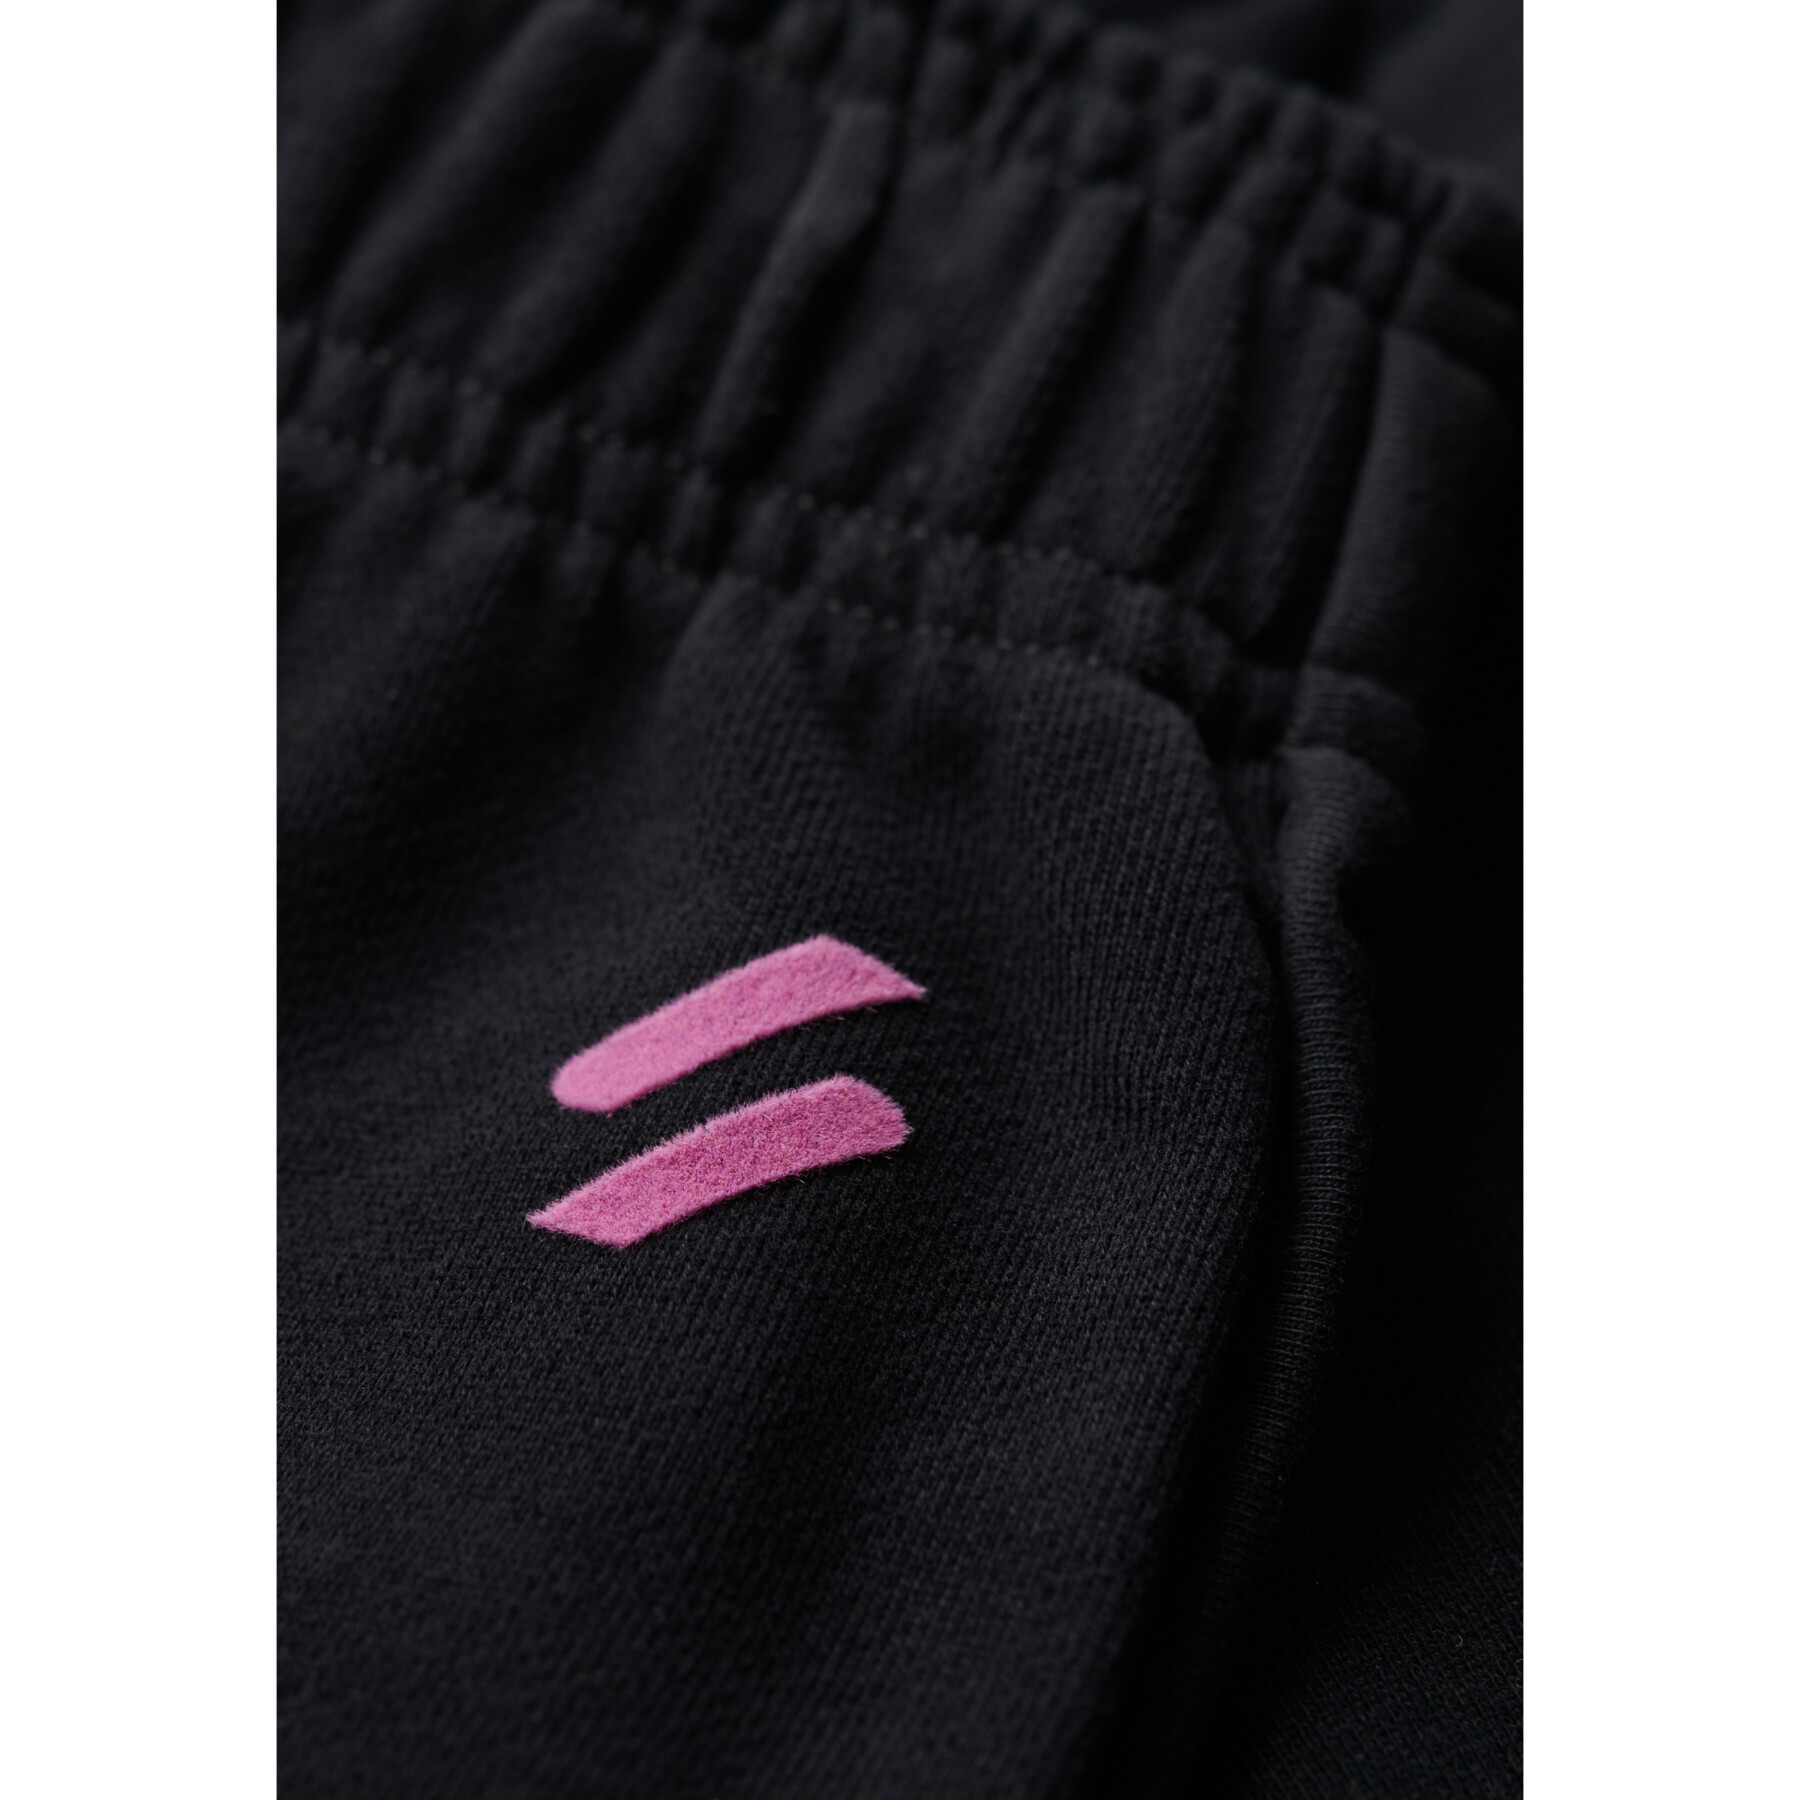 Women's shorts Superdry Sportswear Logo